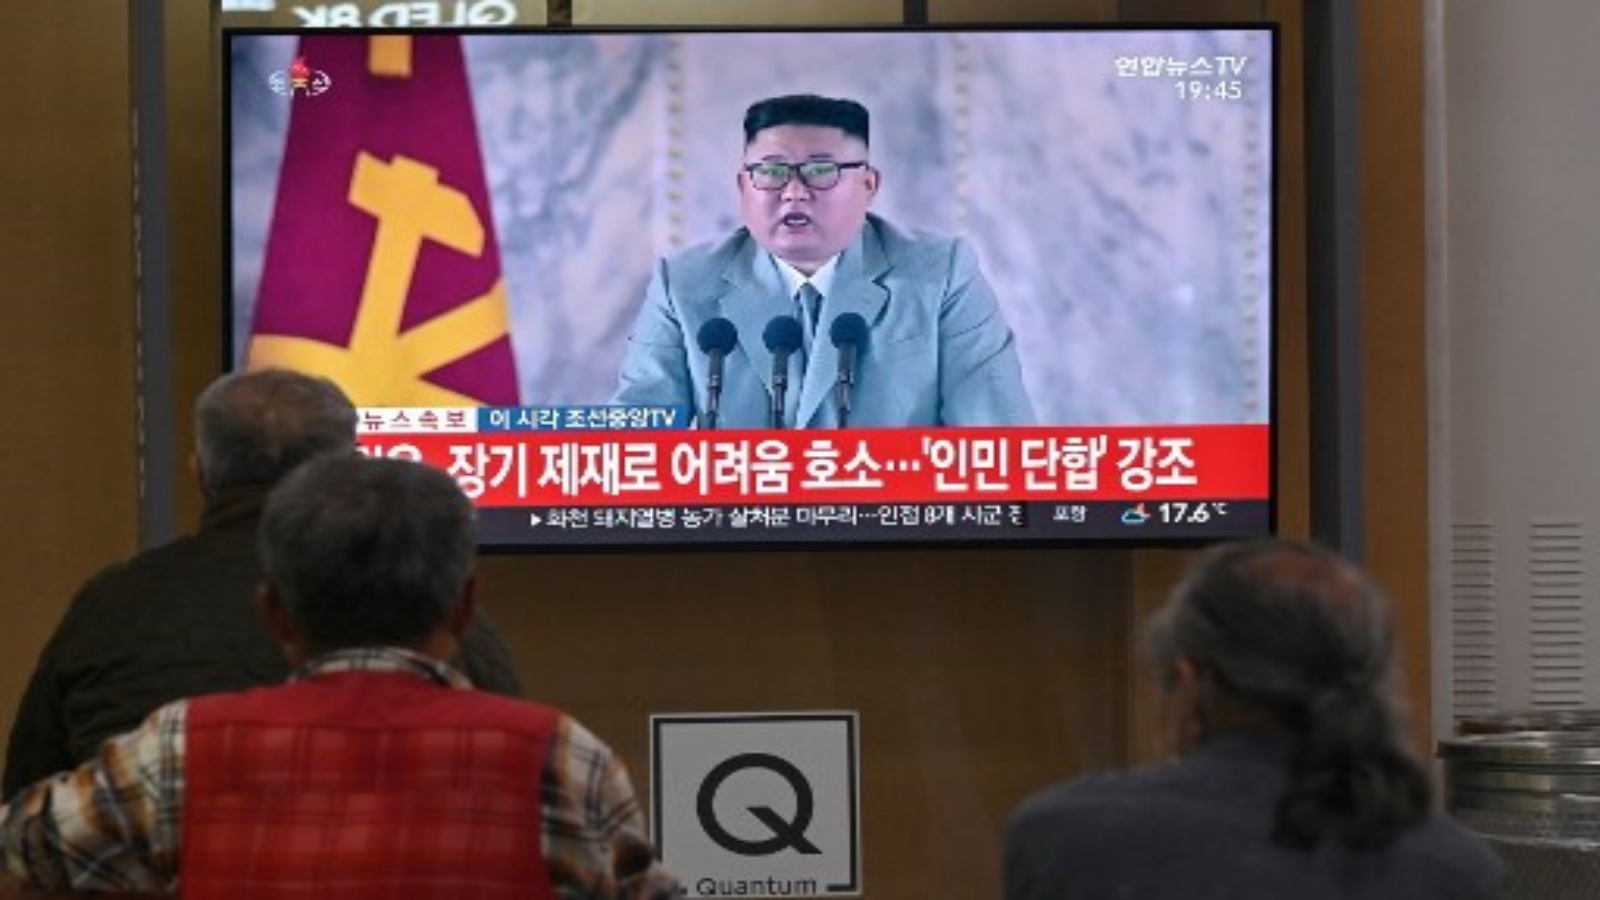 كوريون شماليون يشاهدون بثًا إخباريًا تلفزيونيًا لخطاب ألقاه زعيم كوريا الشمالية كيم جونغ أون خلال الاحتفالات بالذكرى 75 لحزب العمال الحاكم في كوريا الشمالية التي عقدت في بيونغ يانغ ، في محطة سكة حديد في سيول في 10 أكتوبر 2020